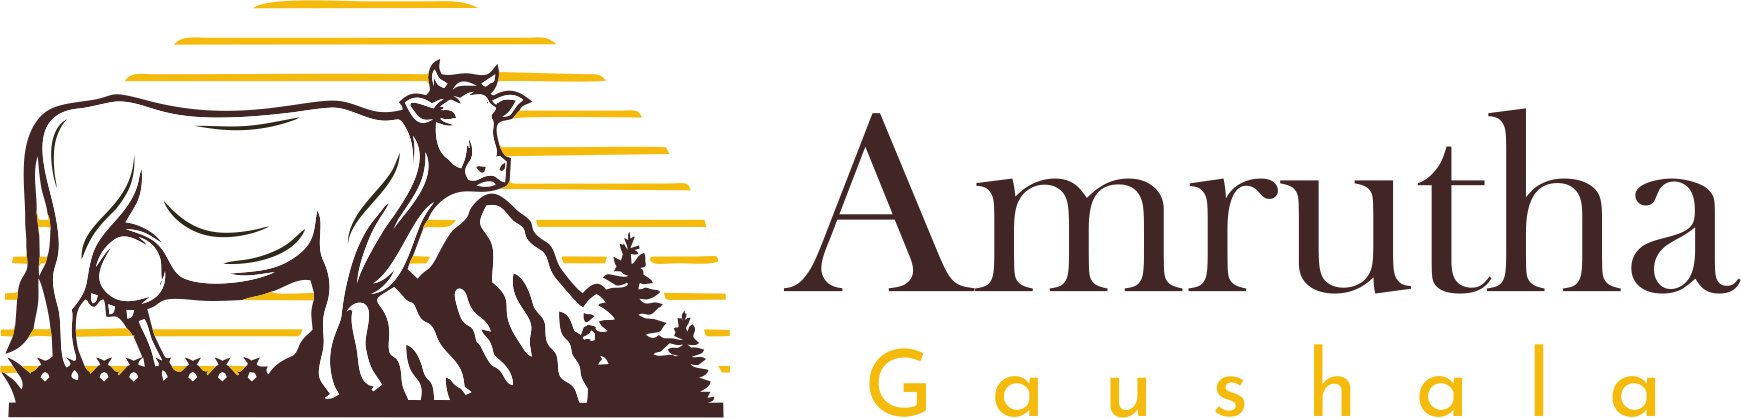 Amrutha-gaushala-logo